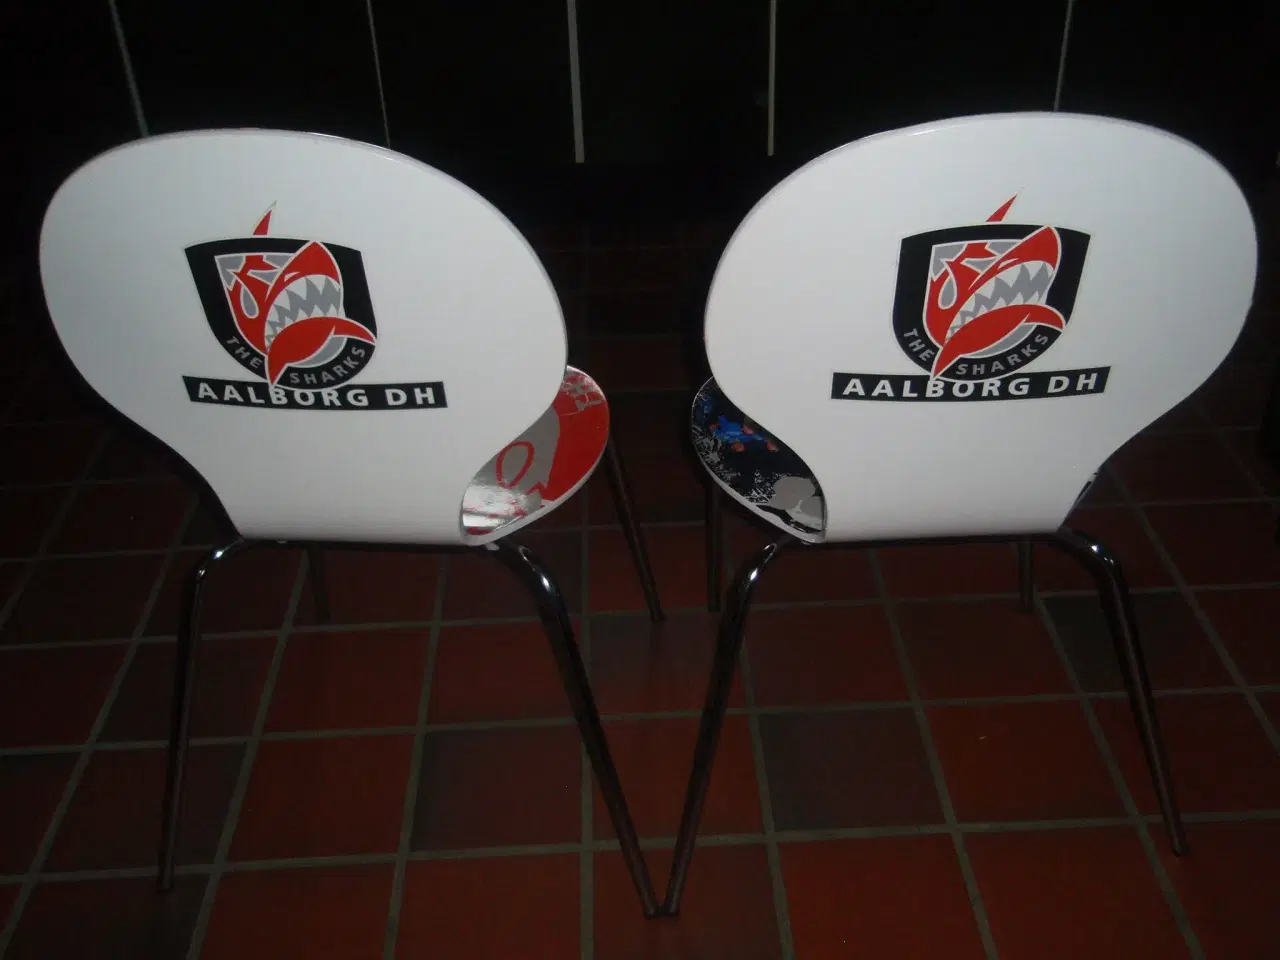 Billede 3 - 2 stk. fanklub stole (AALBORG DH )